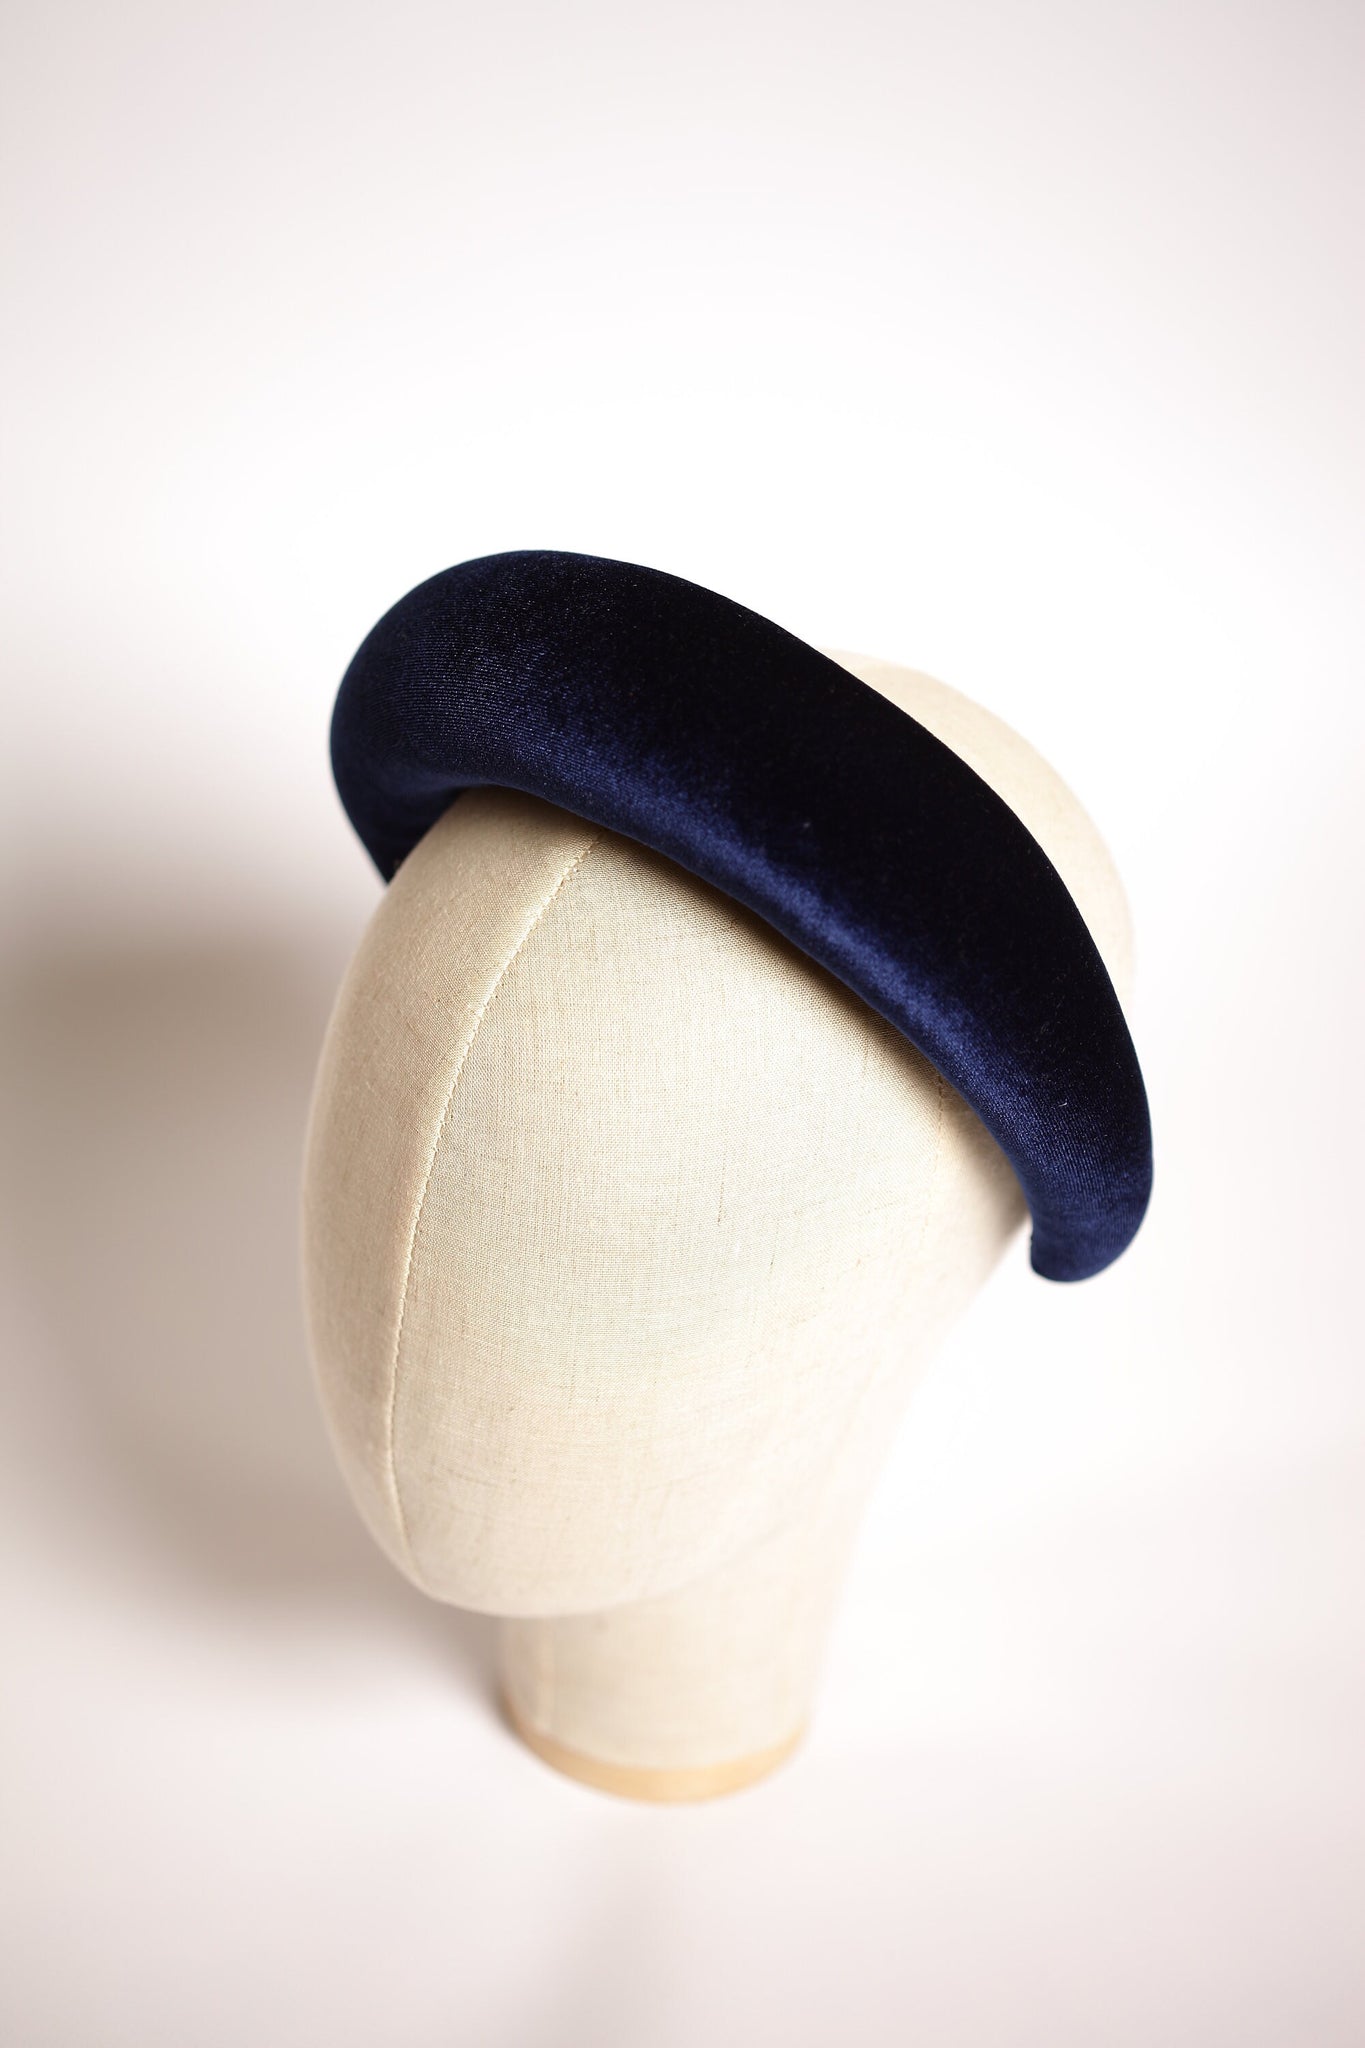 Navy blue padded headband Wide headband Velvet headband Fabric headbands for women Gift for best friend female